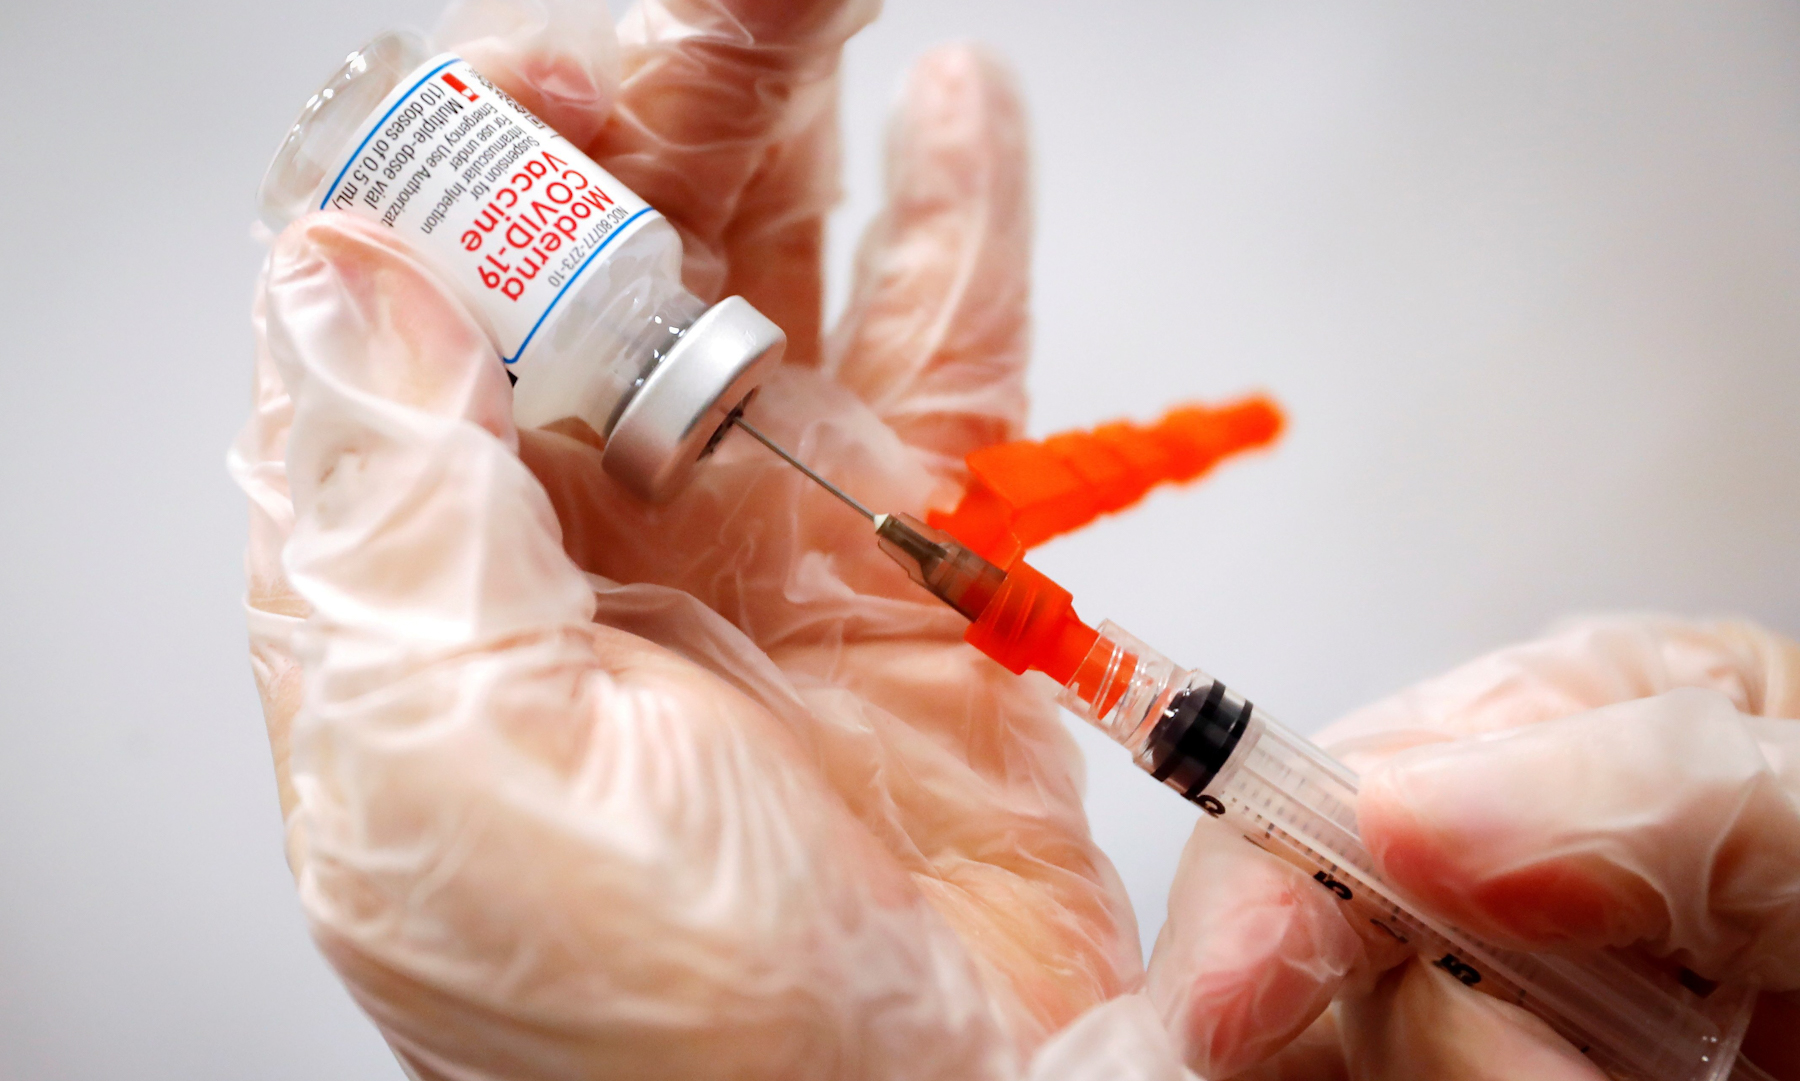 Nhân viên y tế chuẩn bị mũi tiêm vaccine Covid-19 tại thành phố New York, Mỹ hồi tháng 1/2021. Ảnh: Reuters.